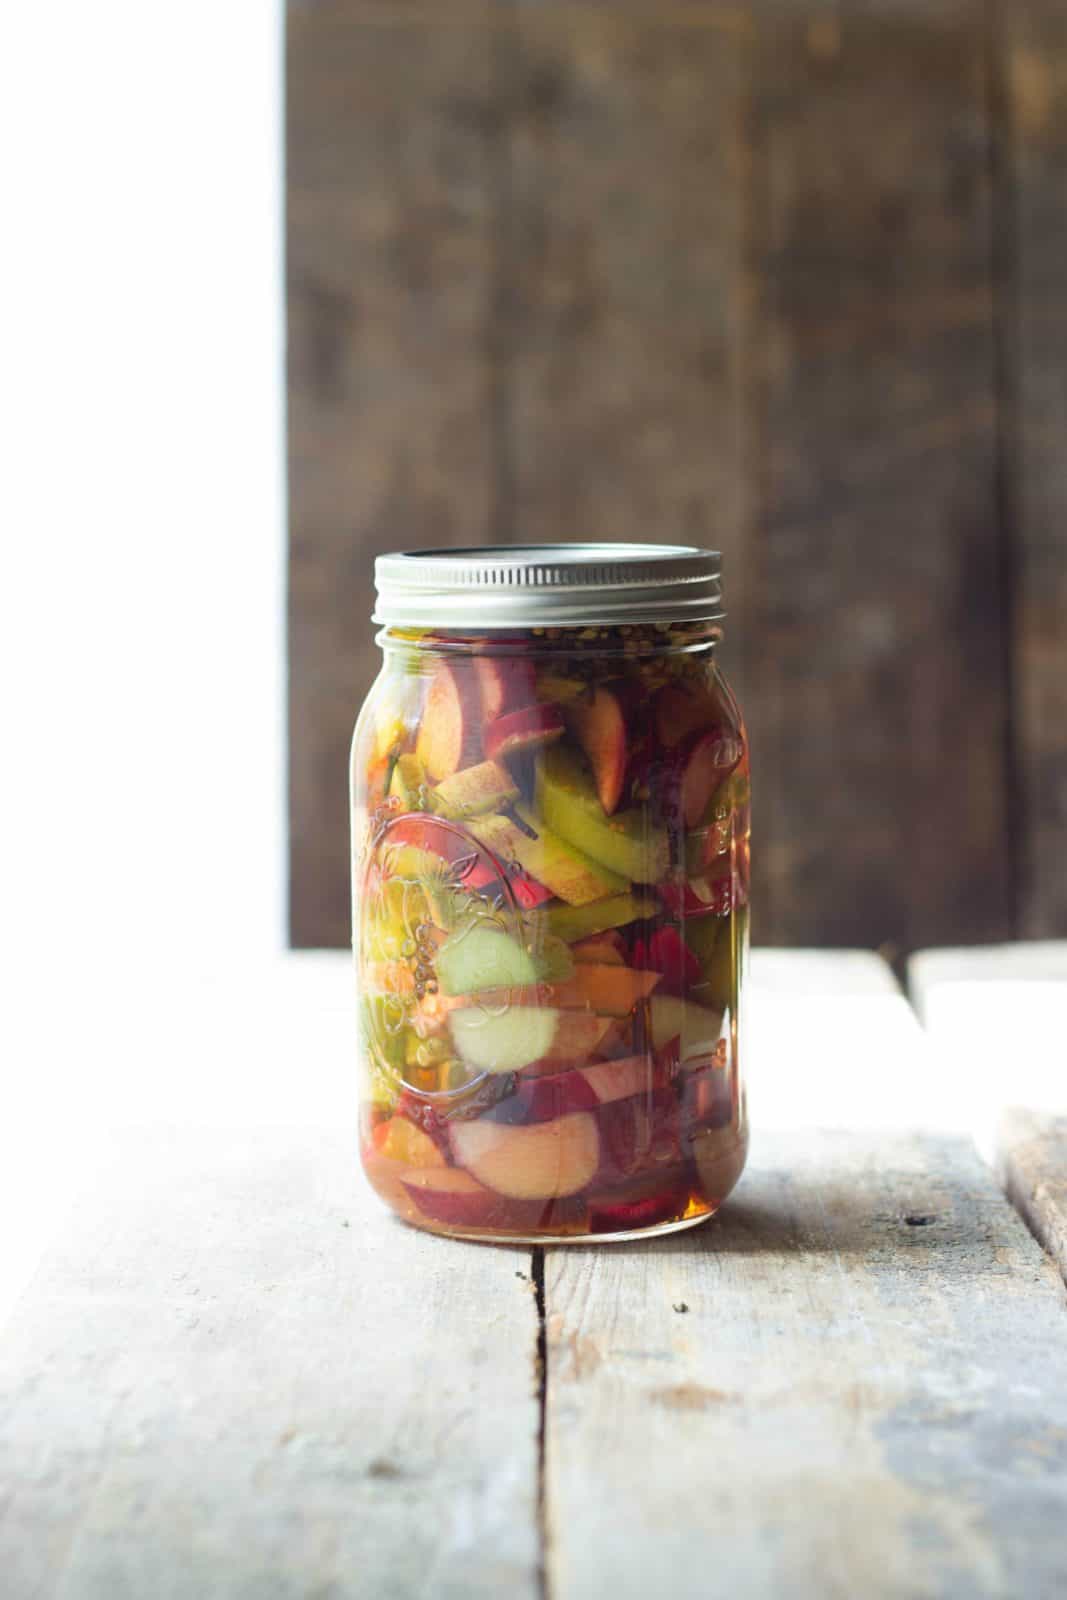 Sweet pickled rhubarb in a clear jar.